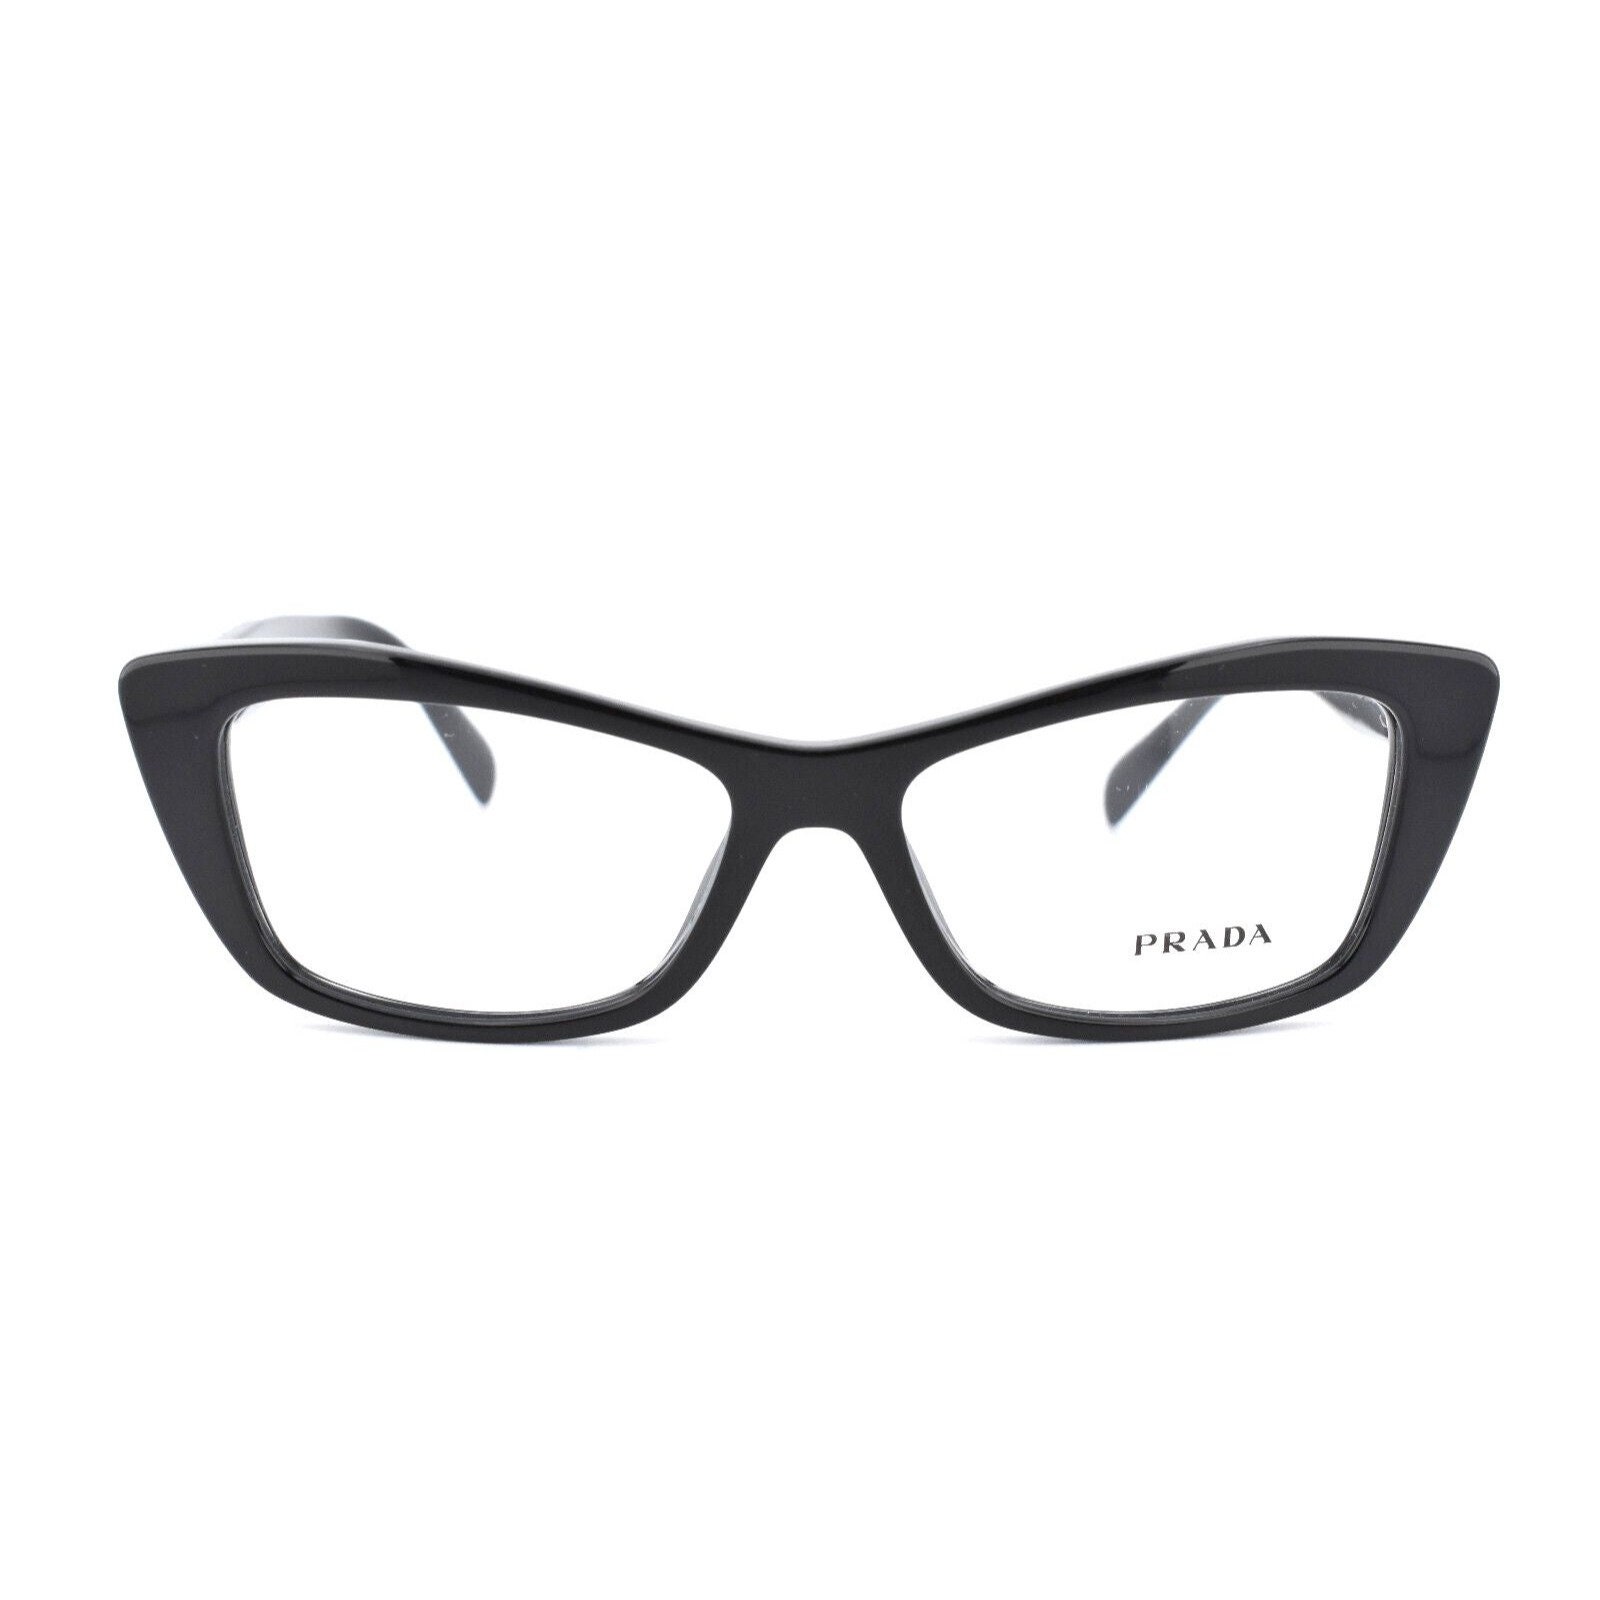 PRADA Eyeglasses Full Frame VPR 15X 1AB-1O1 Black Women Italy - Etsy